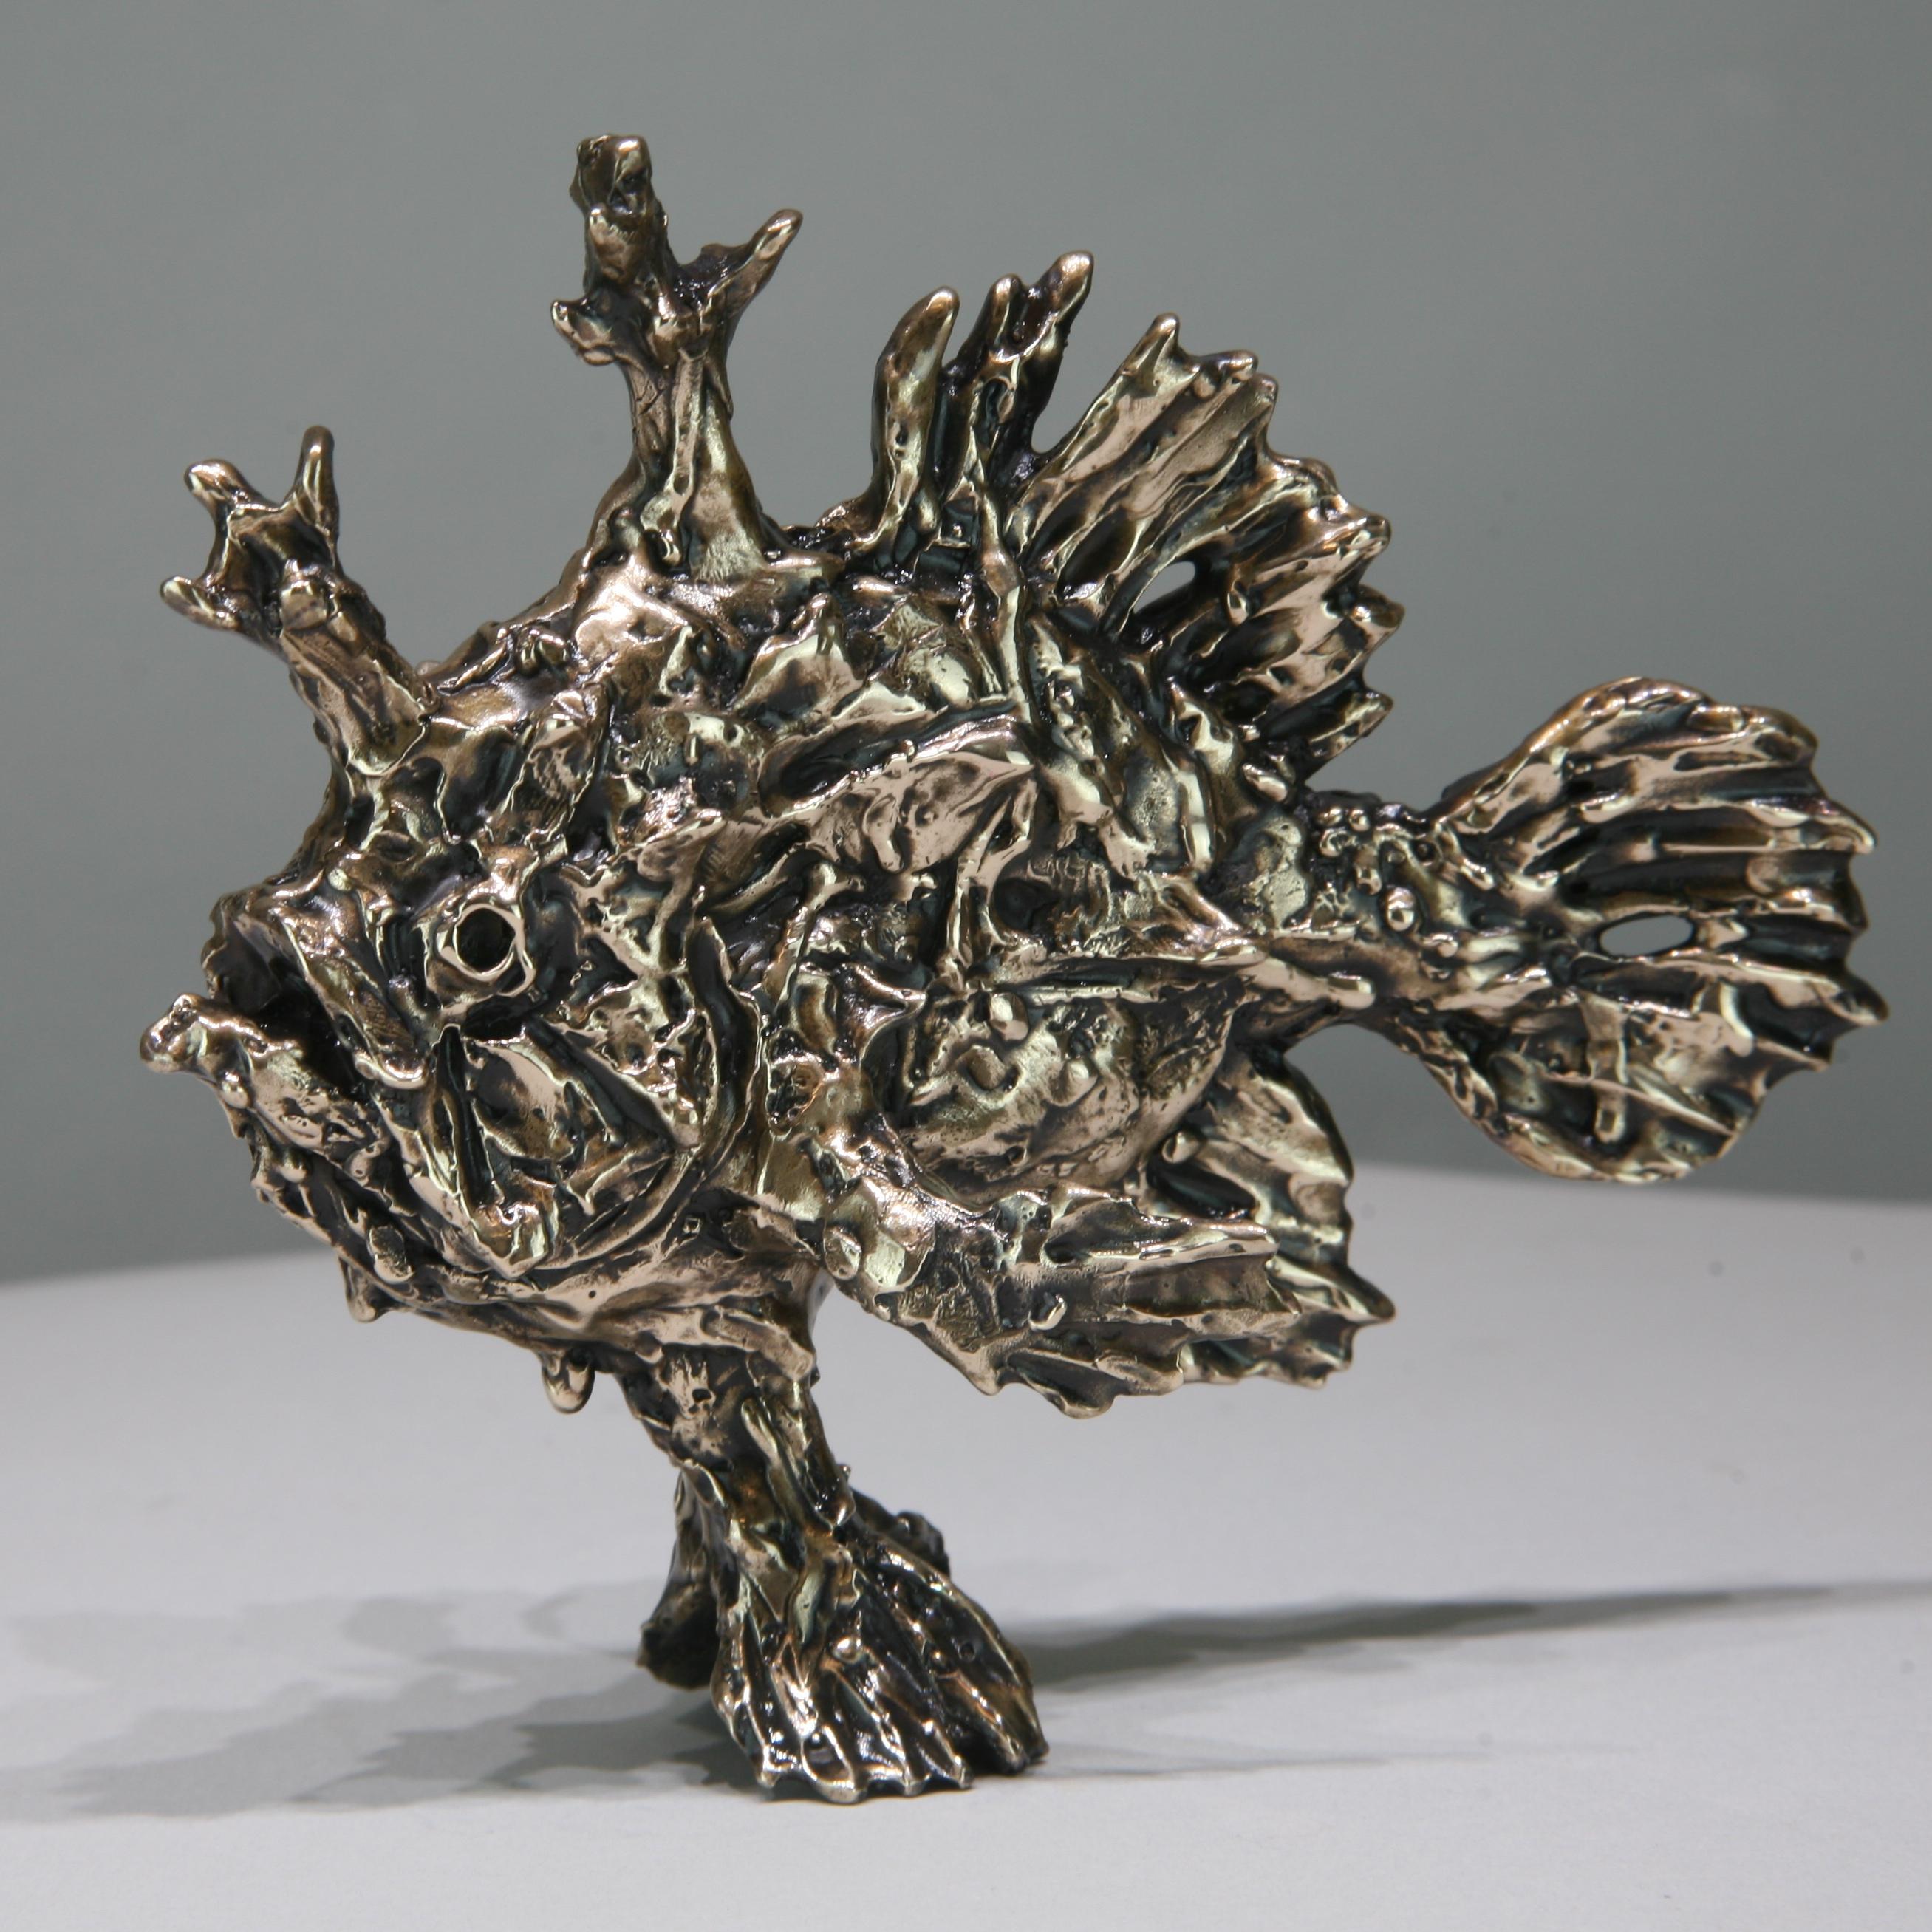 Sargassum Fish-original bronze wildlife- sculpture-artwork-contemporary art - Sculpture by Andrzej Szymczyk